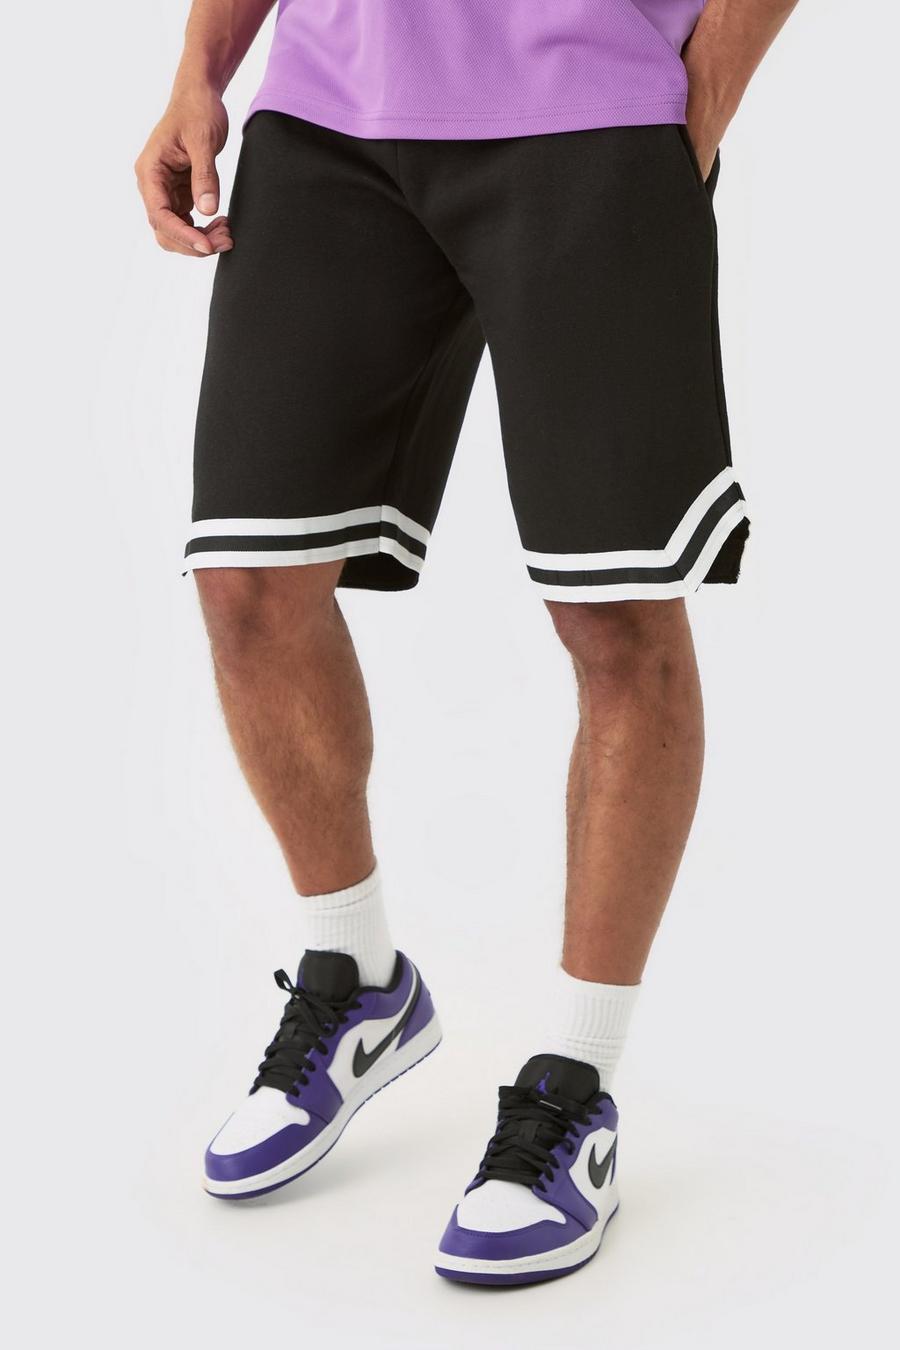 Pantaloncini da basket Tall in jersey con strisce sul fondo, Black negro